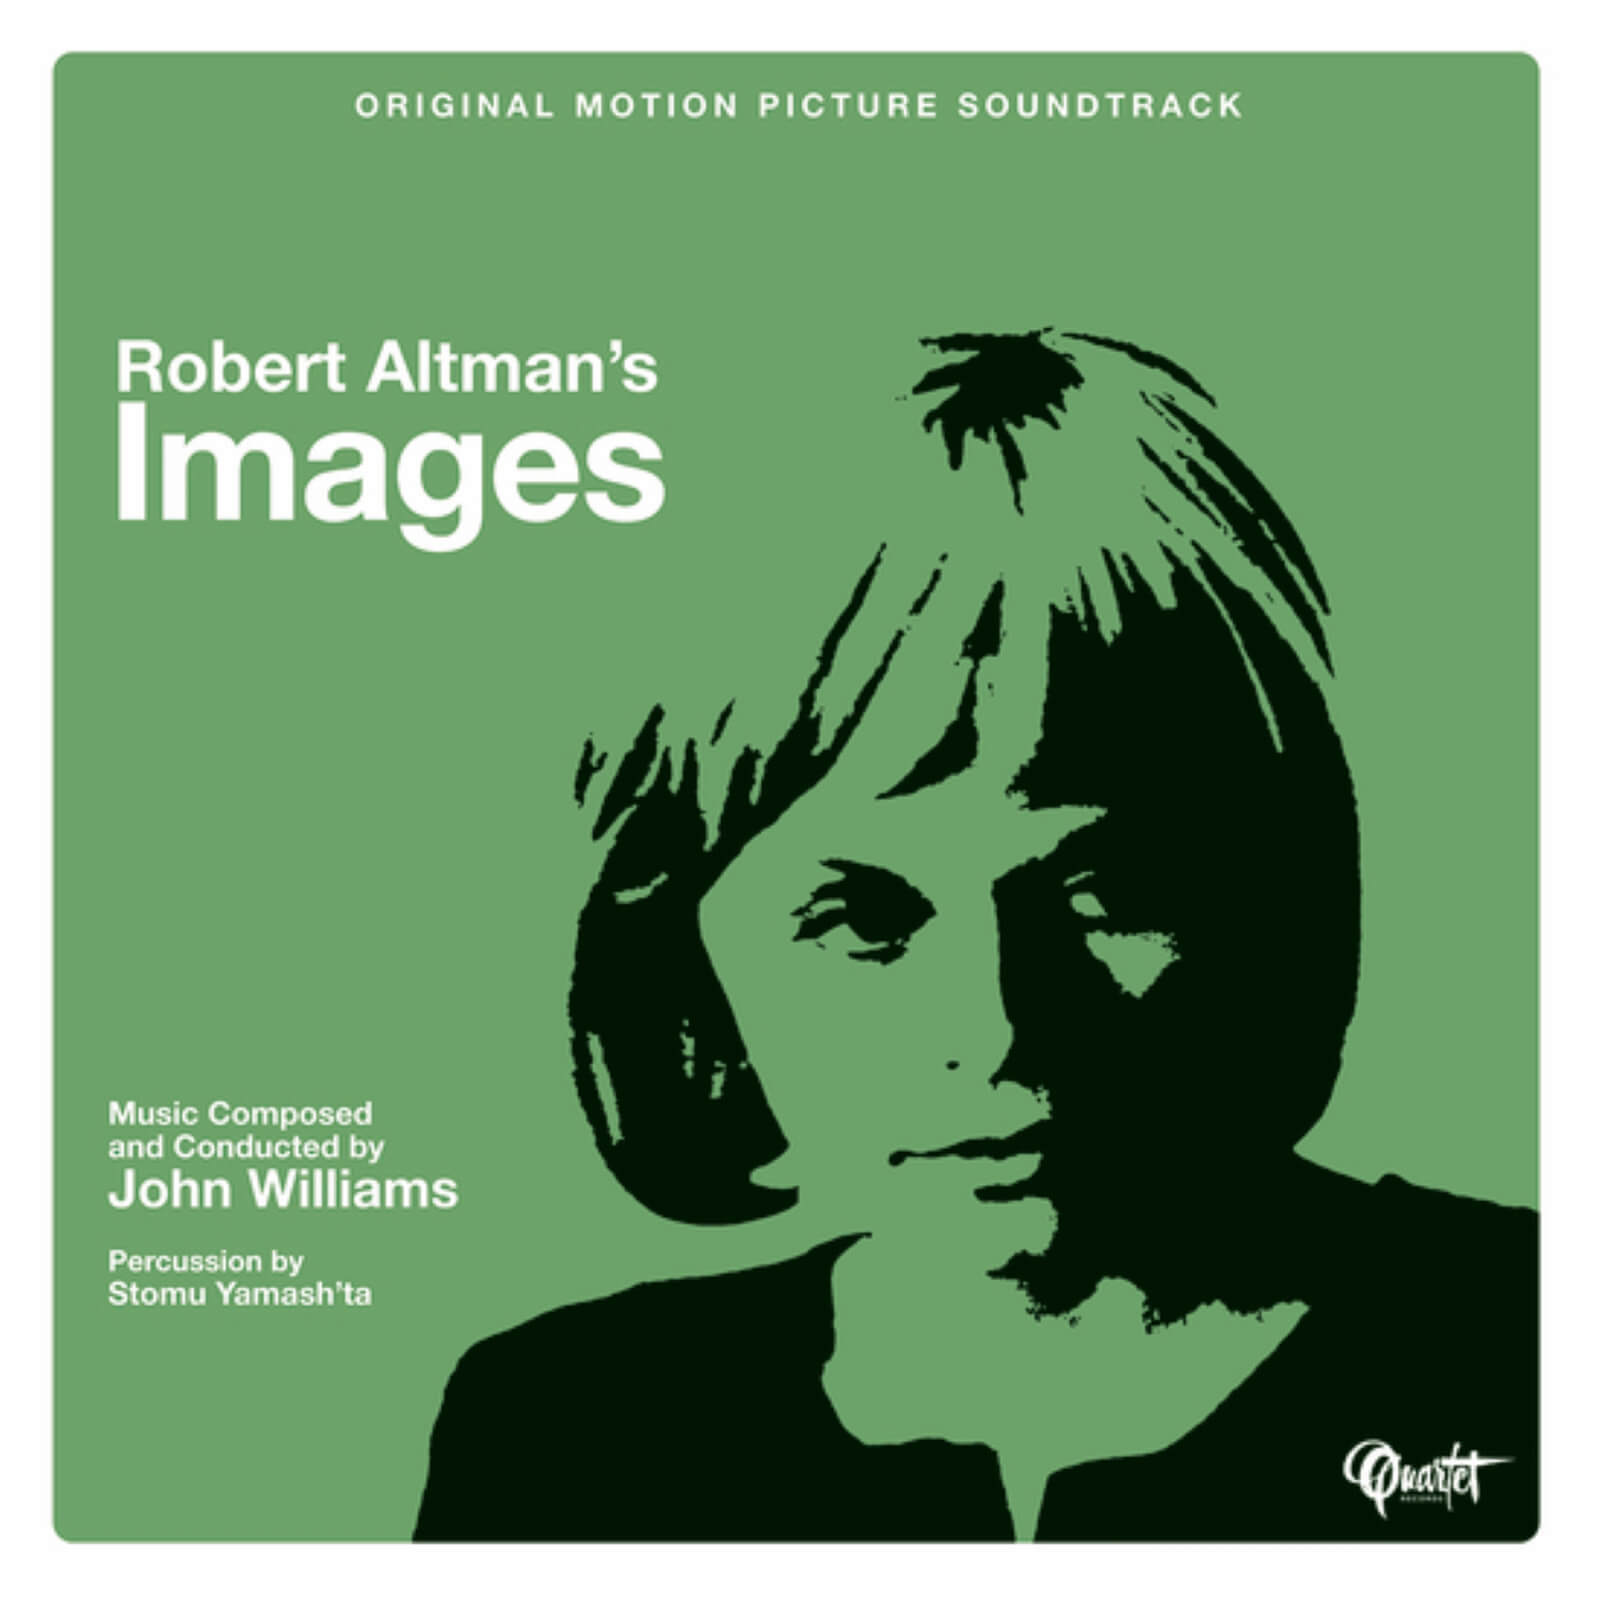 Robert Altman's Images (Original Motion Picture Soundtrack) 180g LP